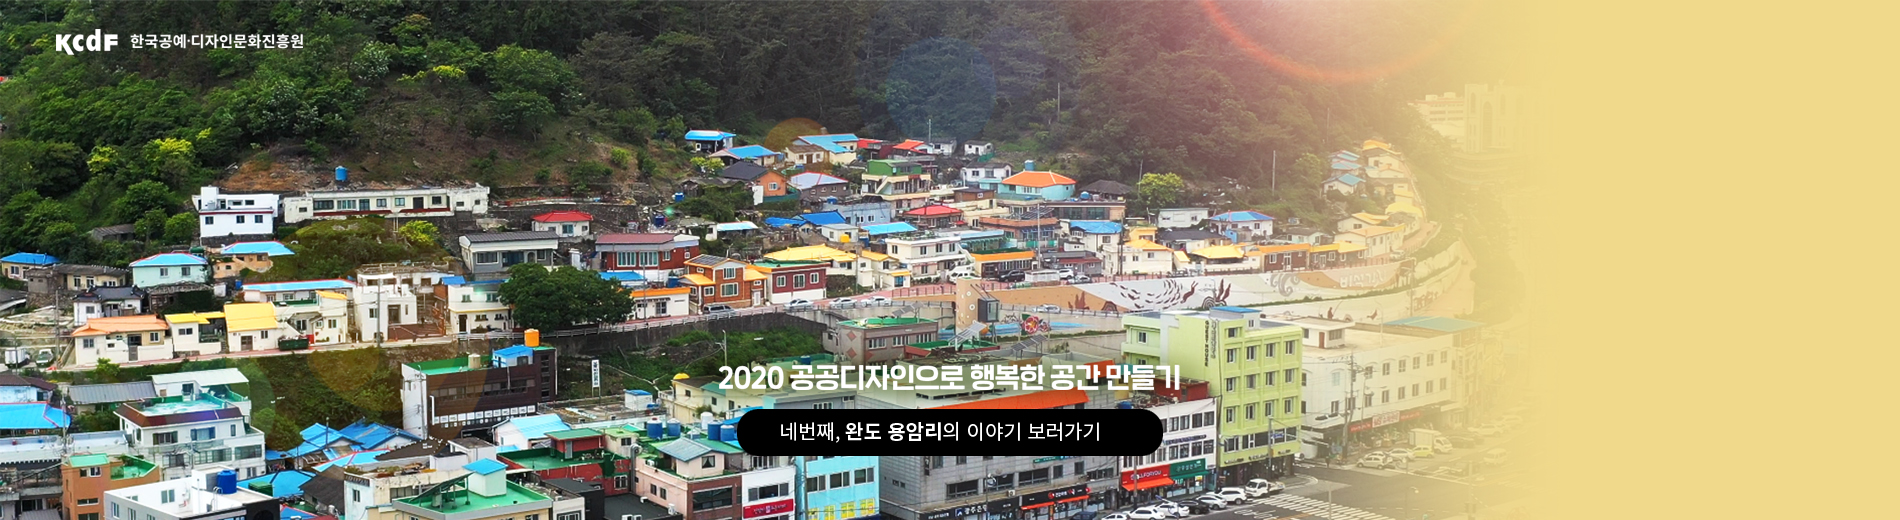 kcdf 한국공예·디자인문화진흥원 2020 공공디자인으로 행복한 공간 만들기 공행공 네 번째 이야기 완도 용암리편